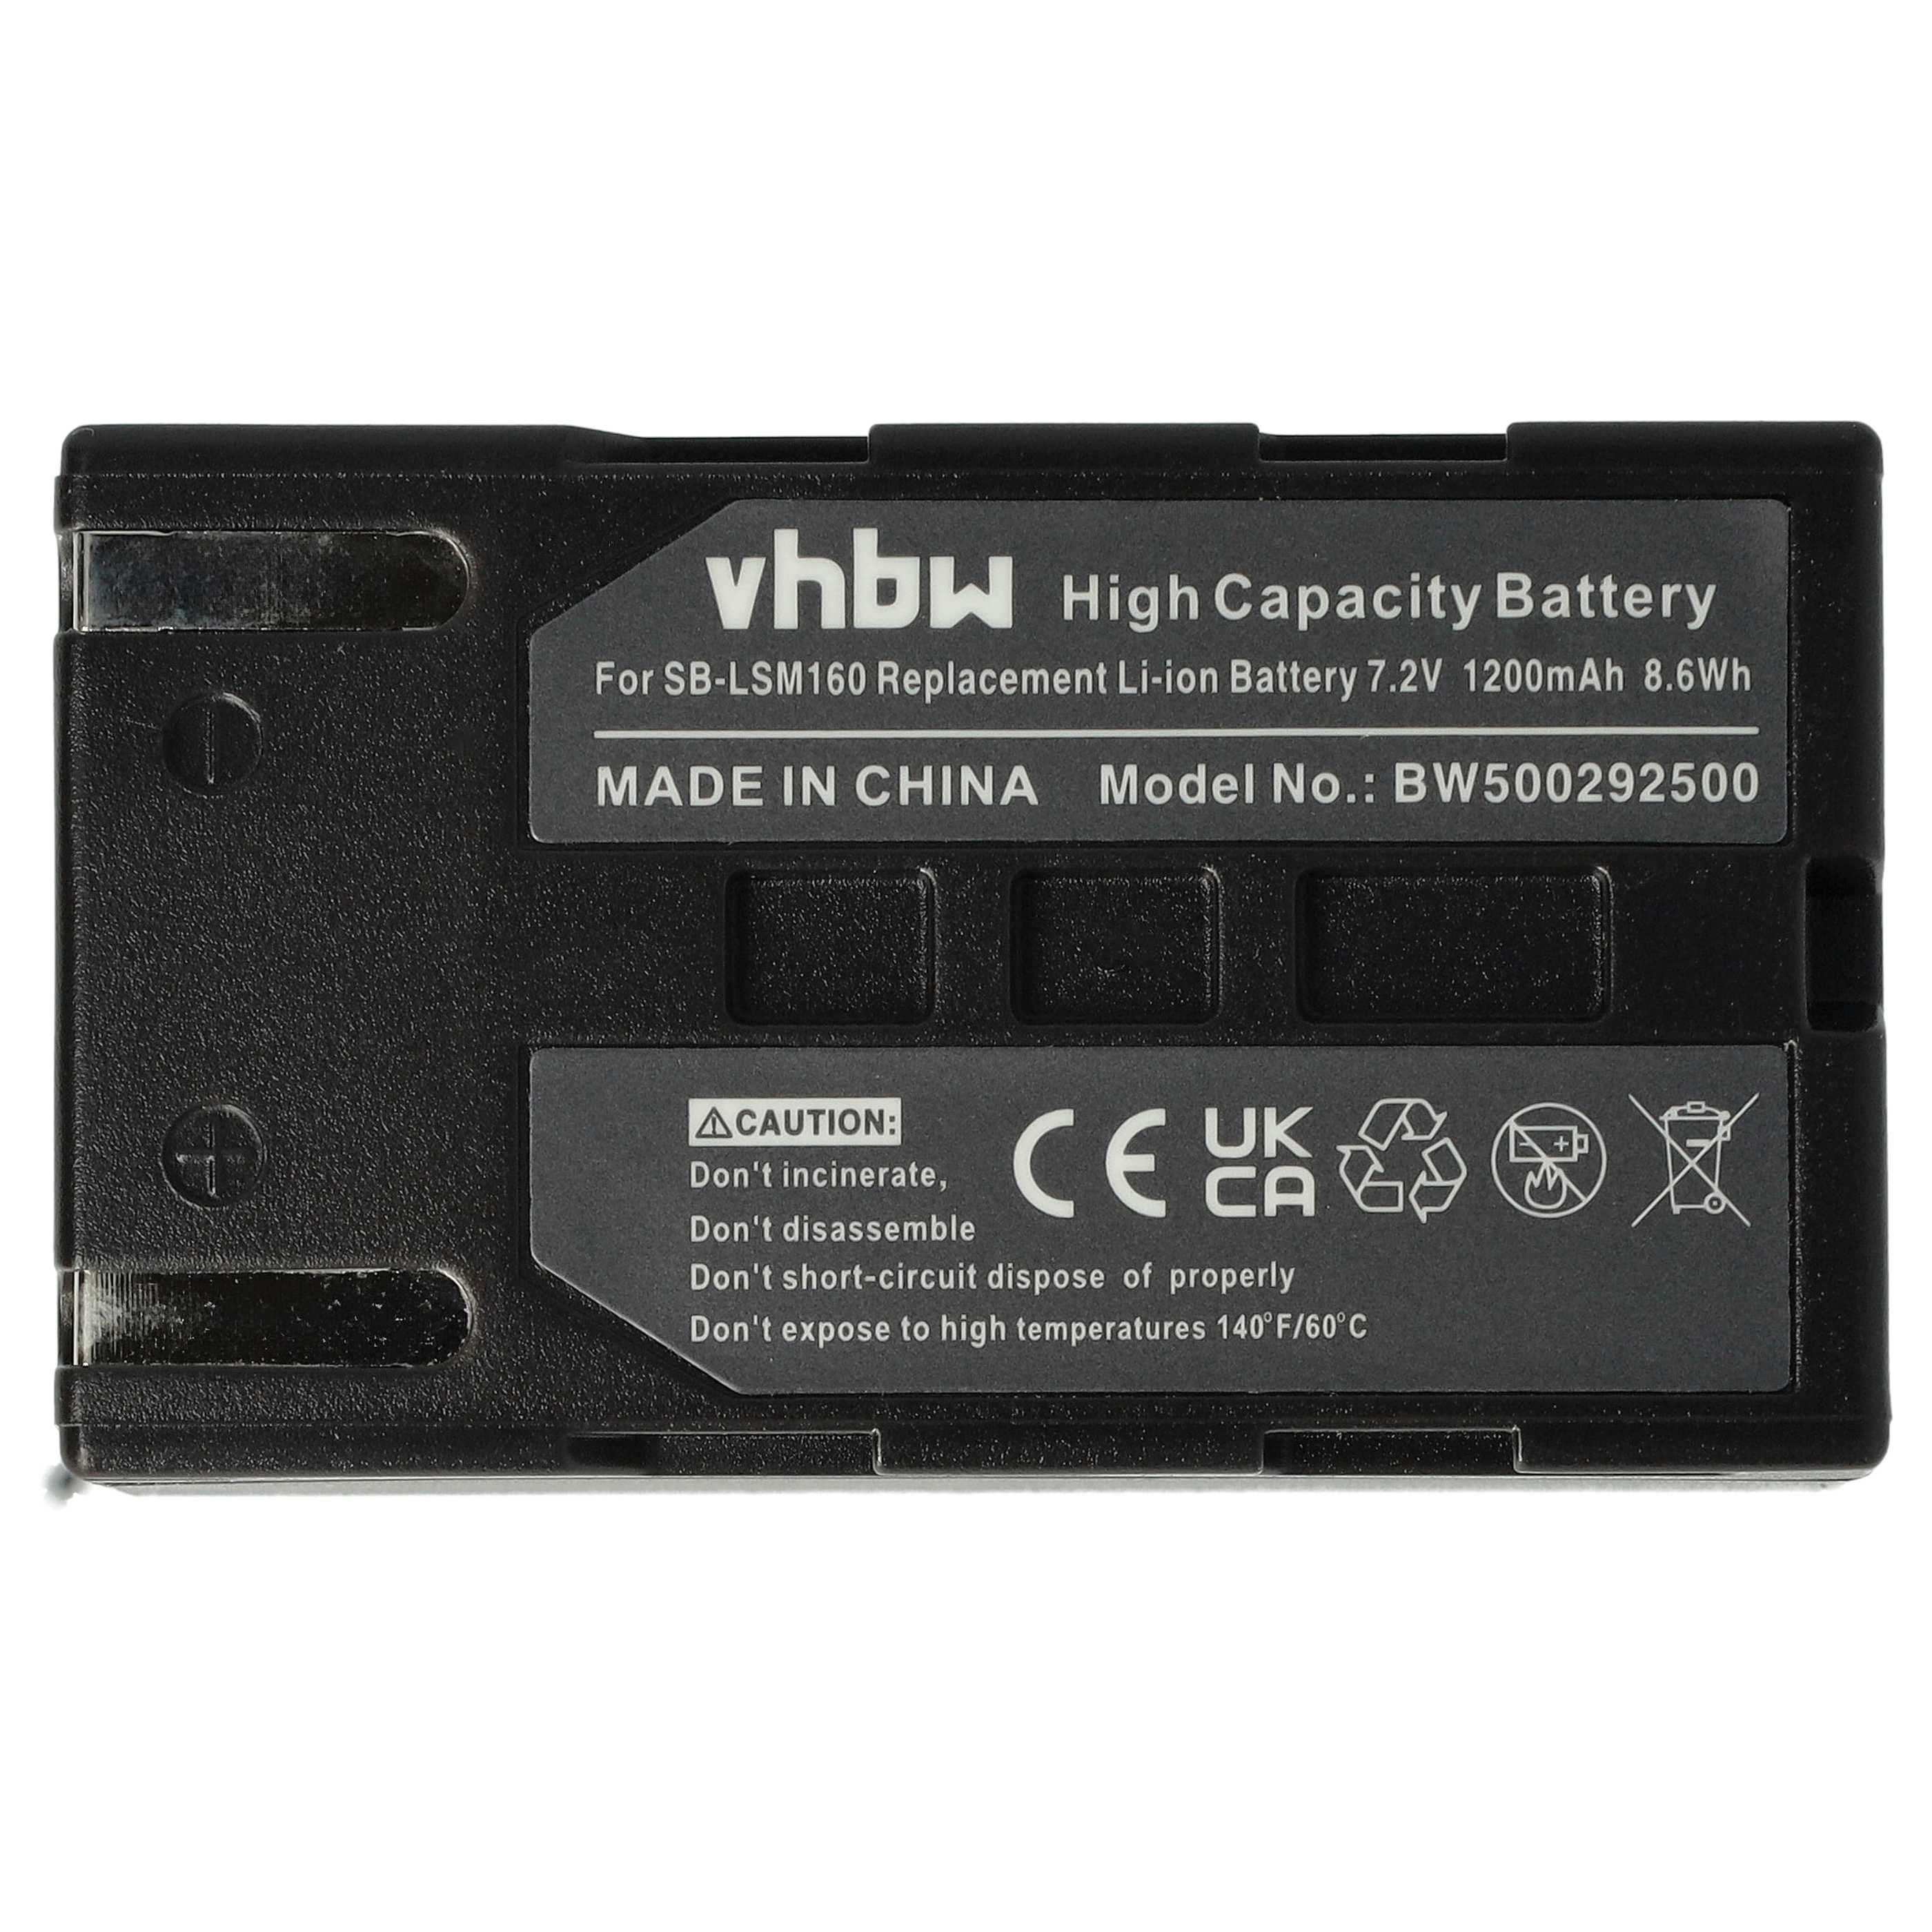 Batterie remplace Samsung SB-LSM80, SB-LSM320, SB-LSM160 pour caméscope - 1200mAh 7,2V Li-ion